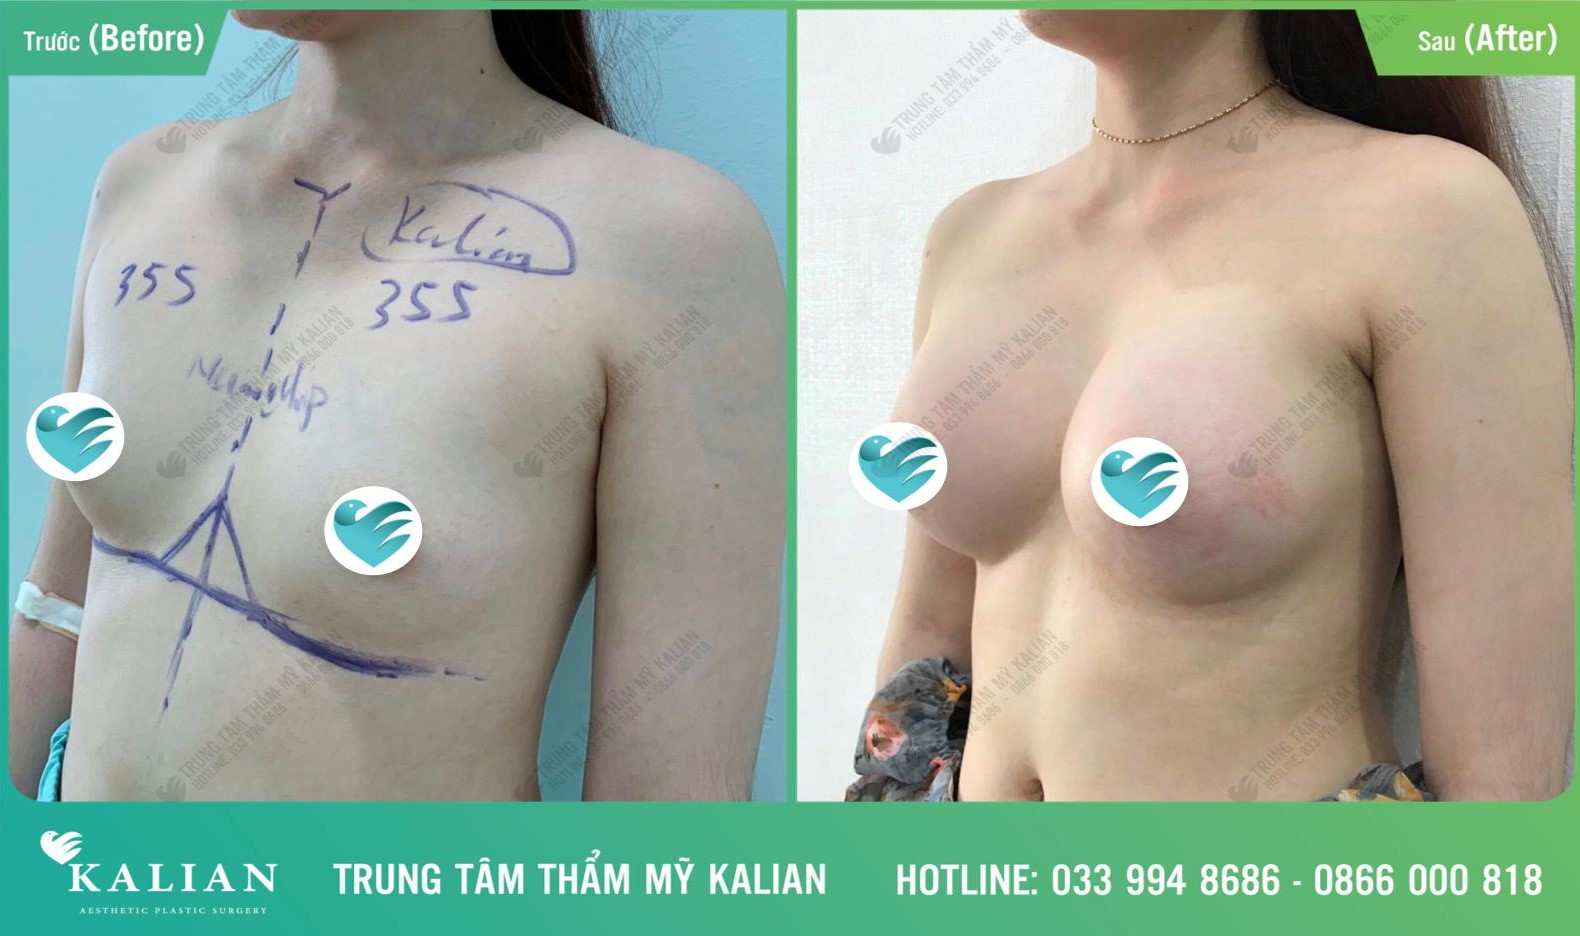 Dịch vụ nâng ngực - trung tâm thẩm mỹ Kalian